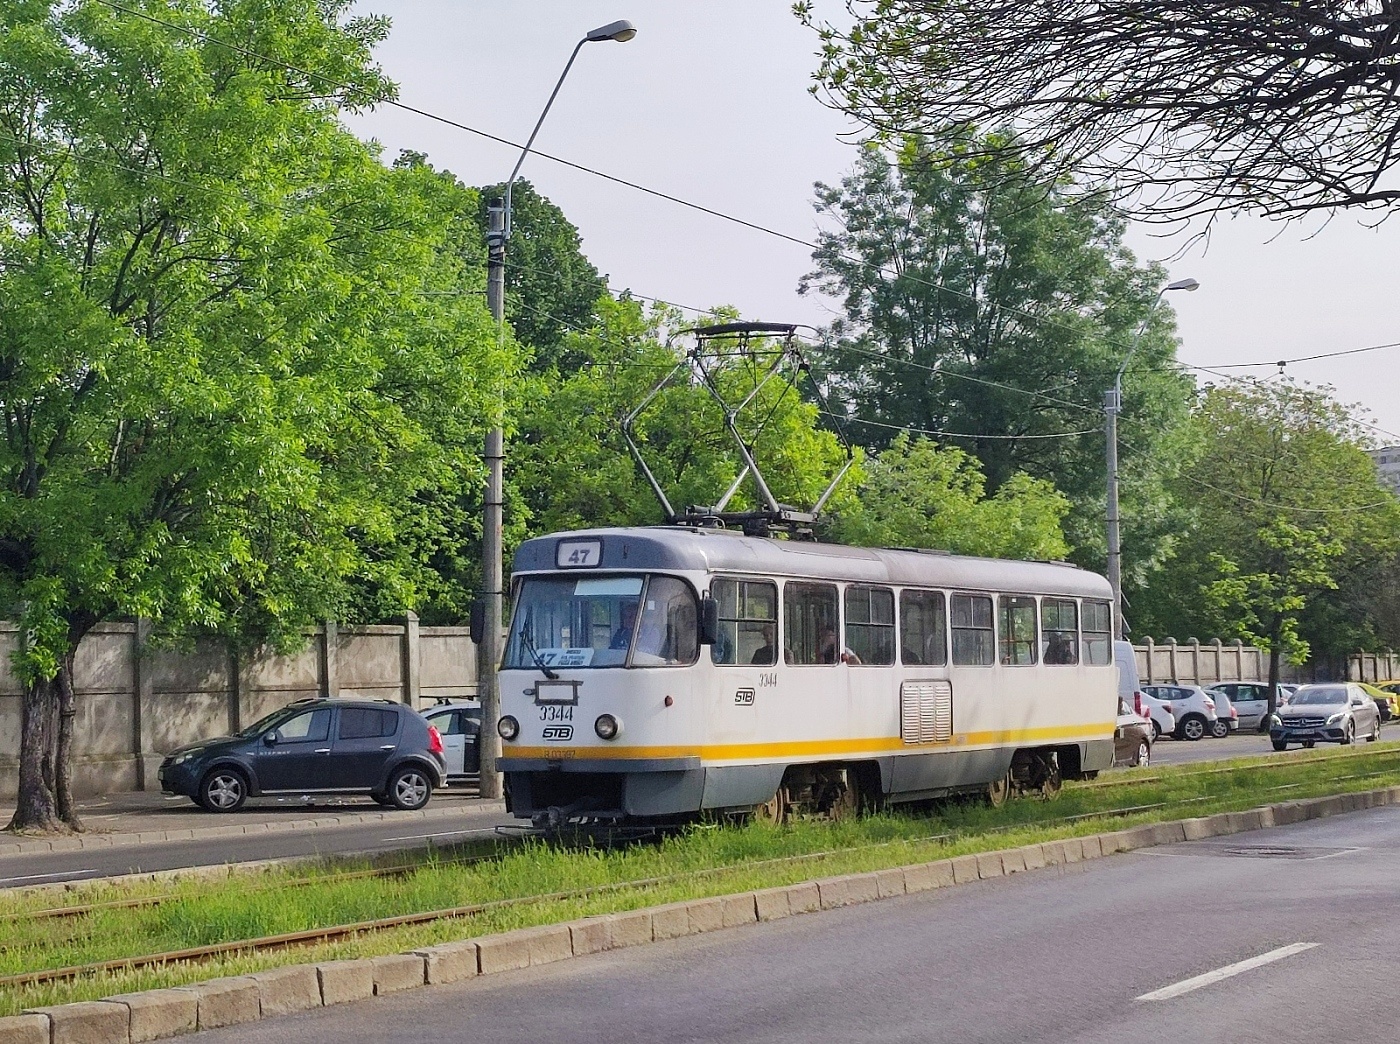 Tatra T4R #3344